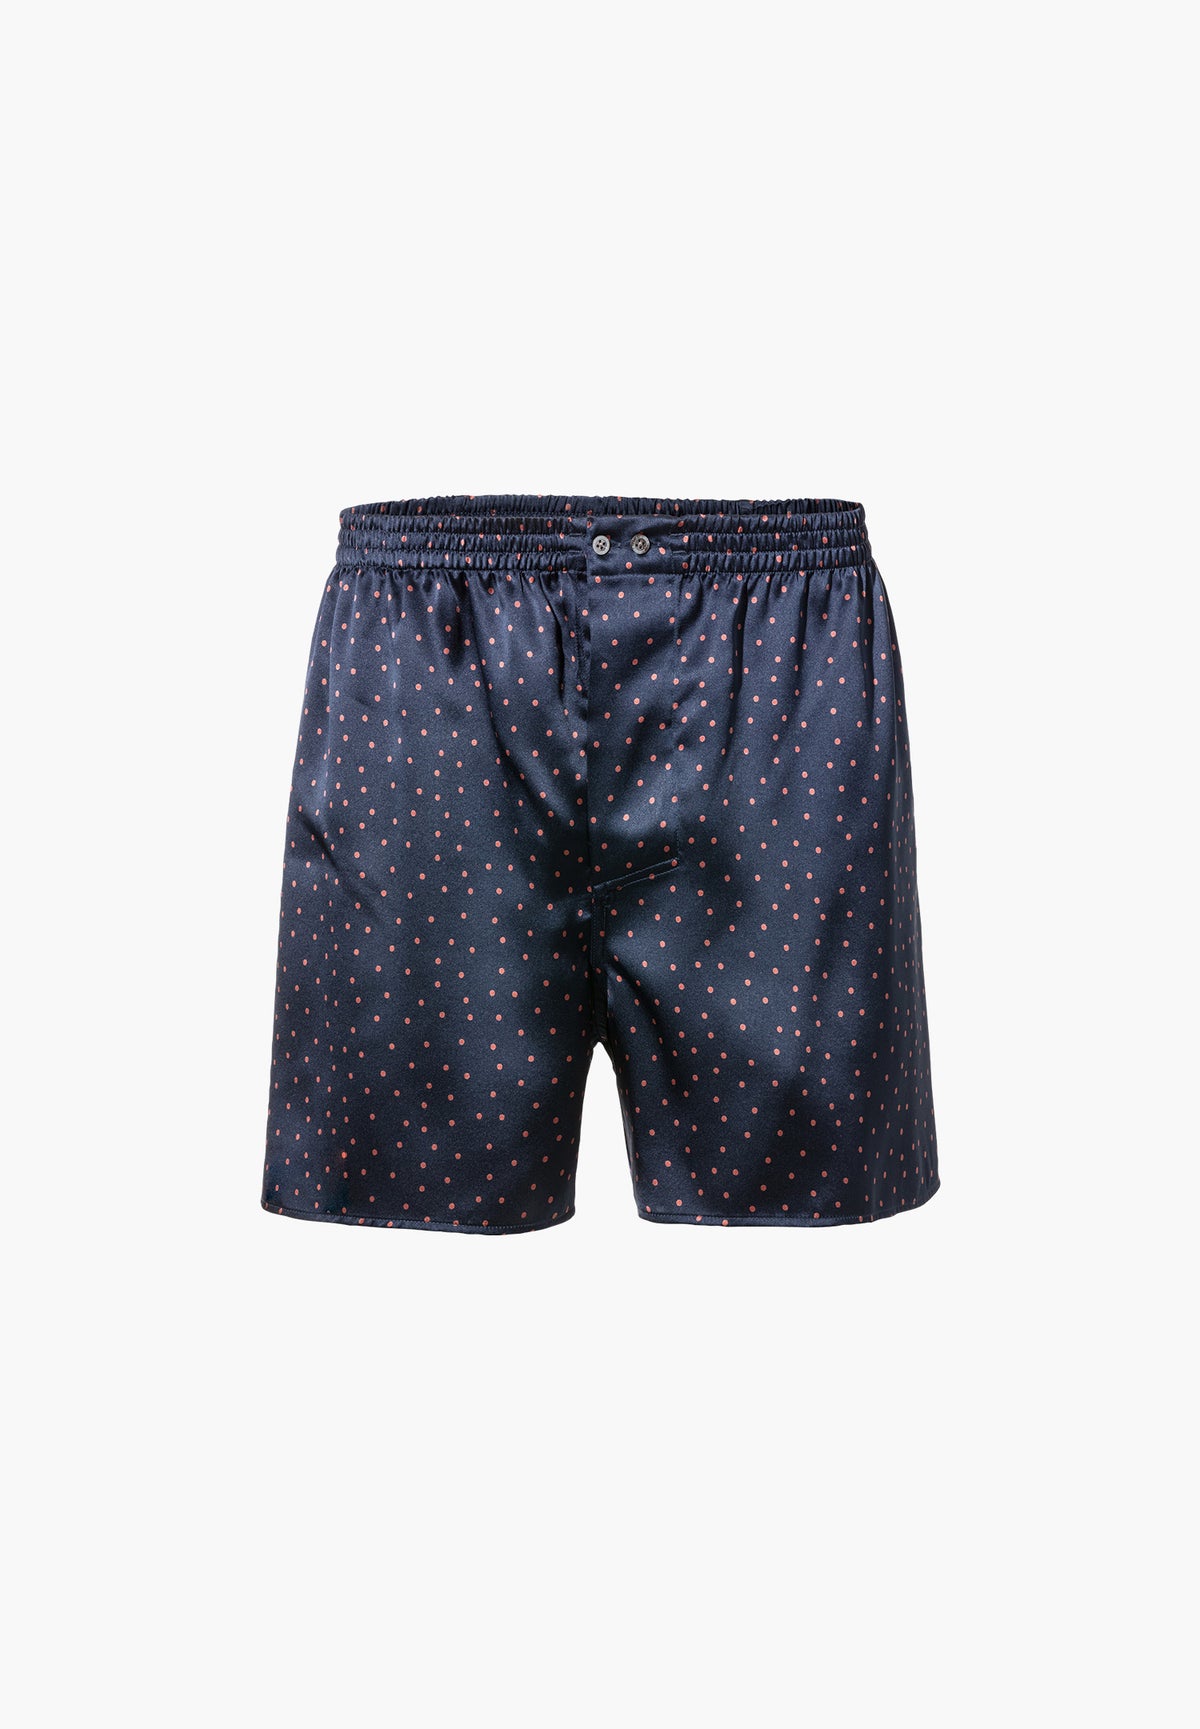 Silk Nightwear | Boxer Shorts - dots